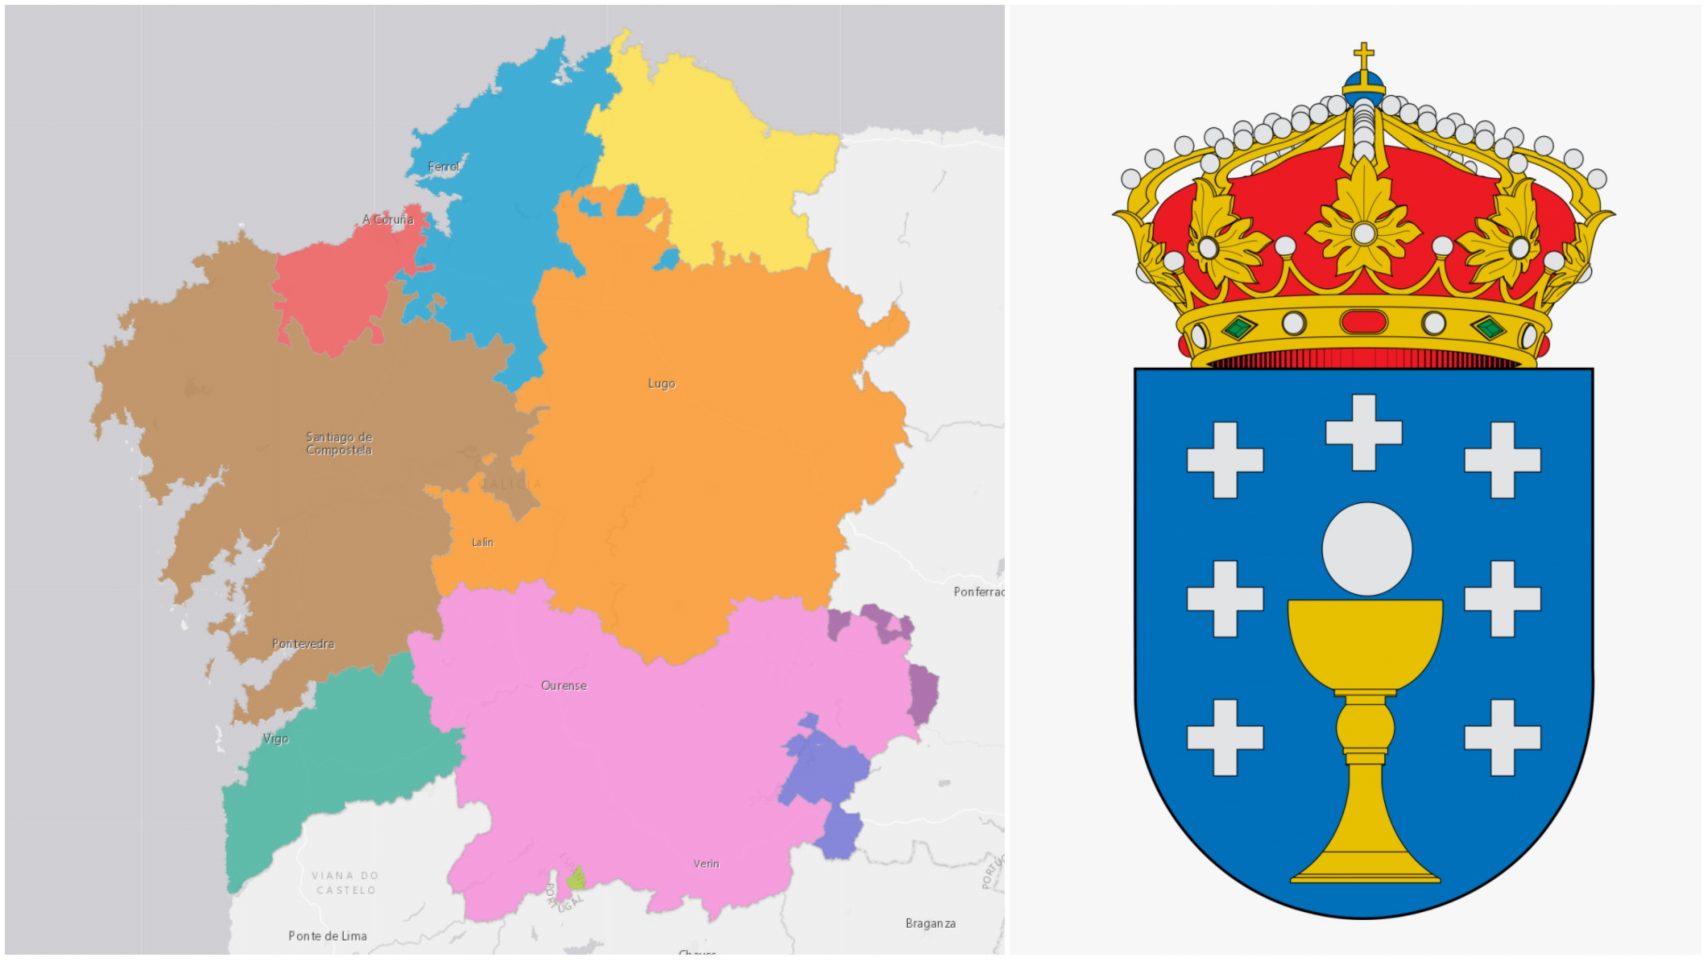 Las siete provincias gallegas originales y el escudo de Galicia que les rinde homenaje.